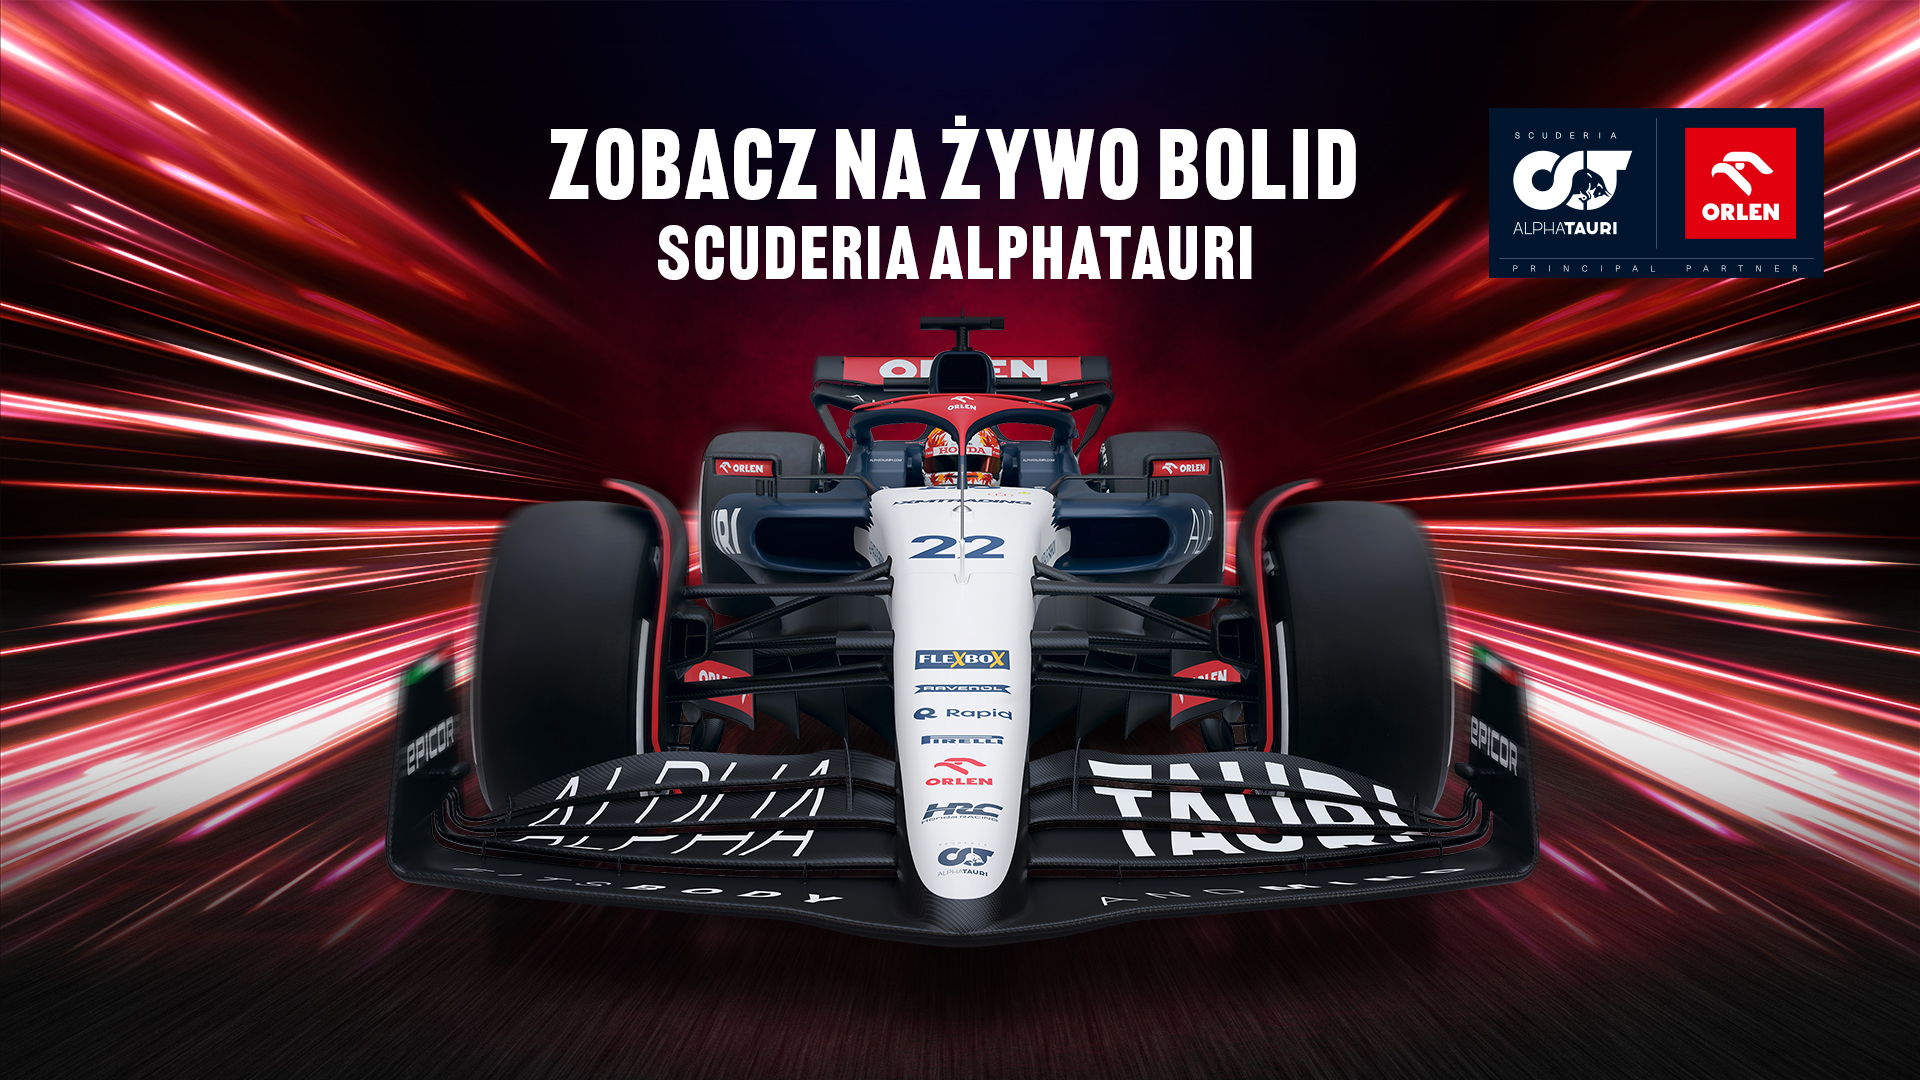 Bolid Scuderia AlphaTauri rusza w tour promocyjny  po stacjach ORLEN w Polsce